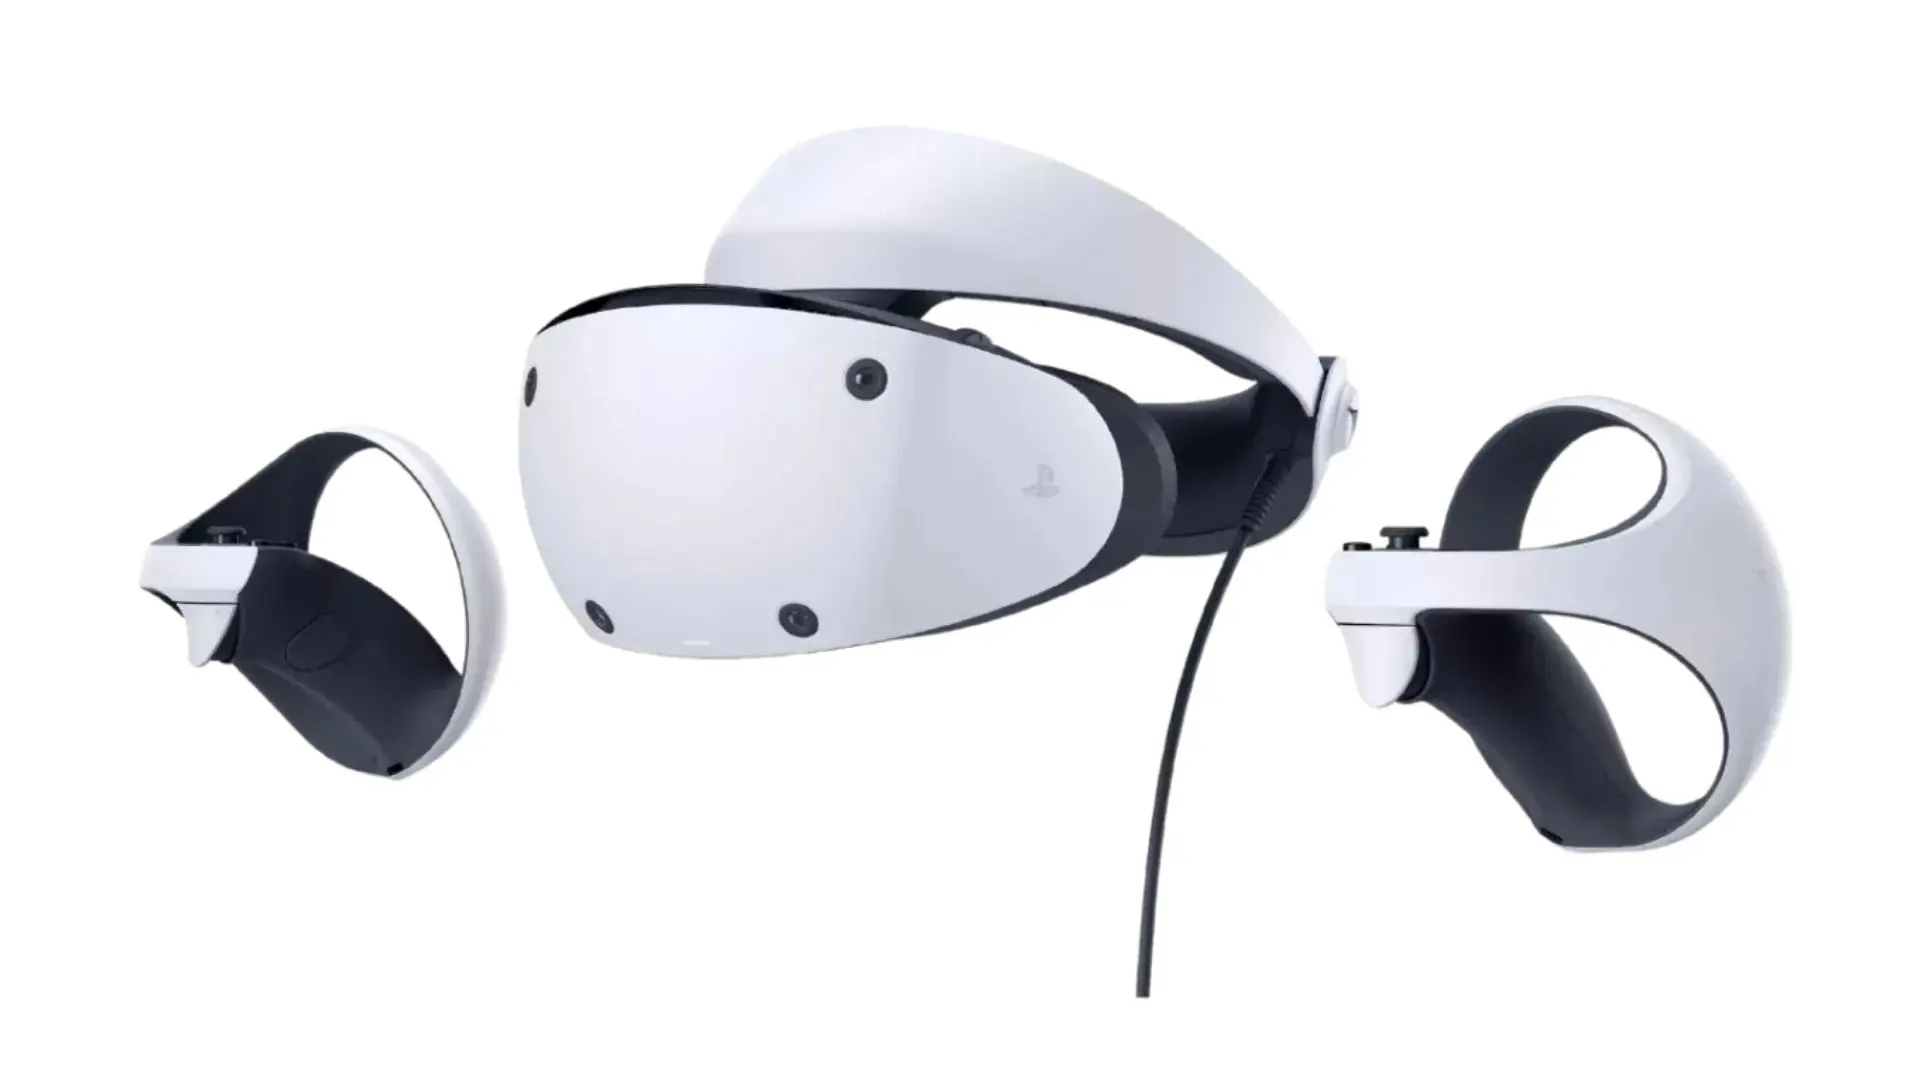 Confirmado el precio y fecha de lanzamiento del PlayStation VR 2